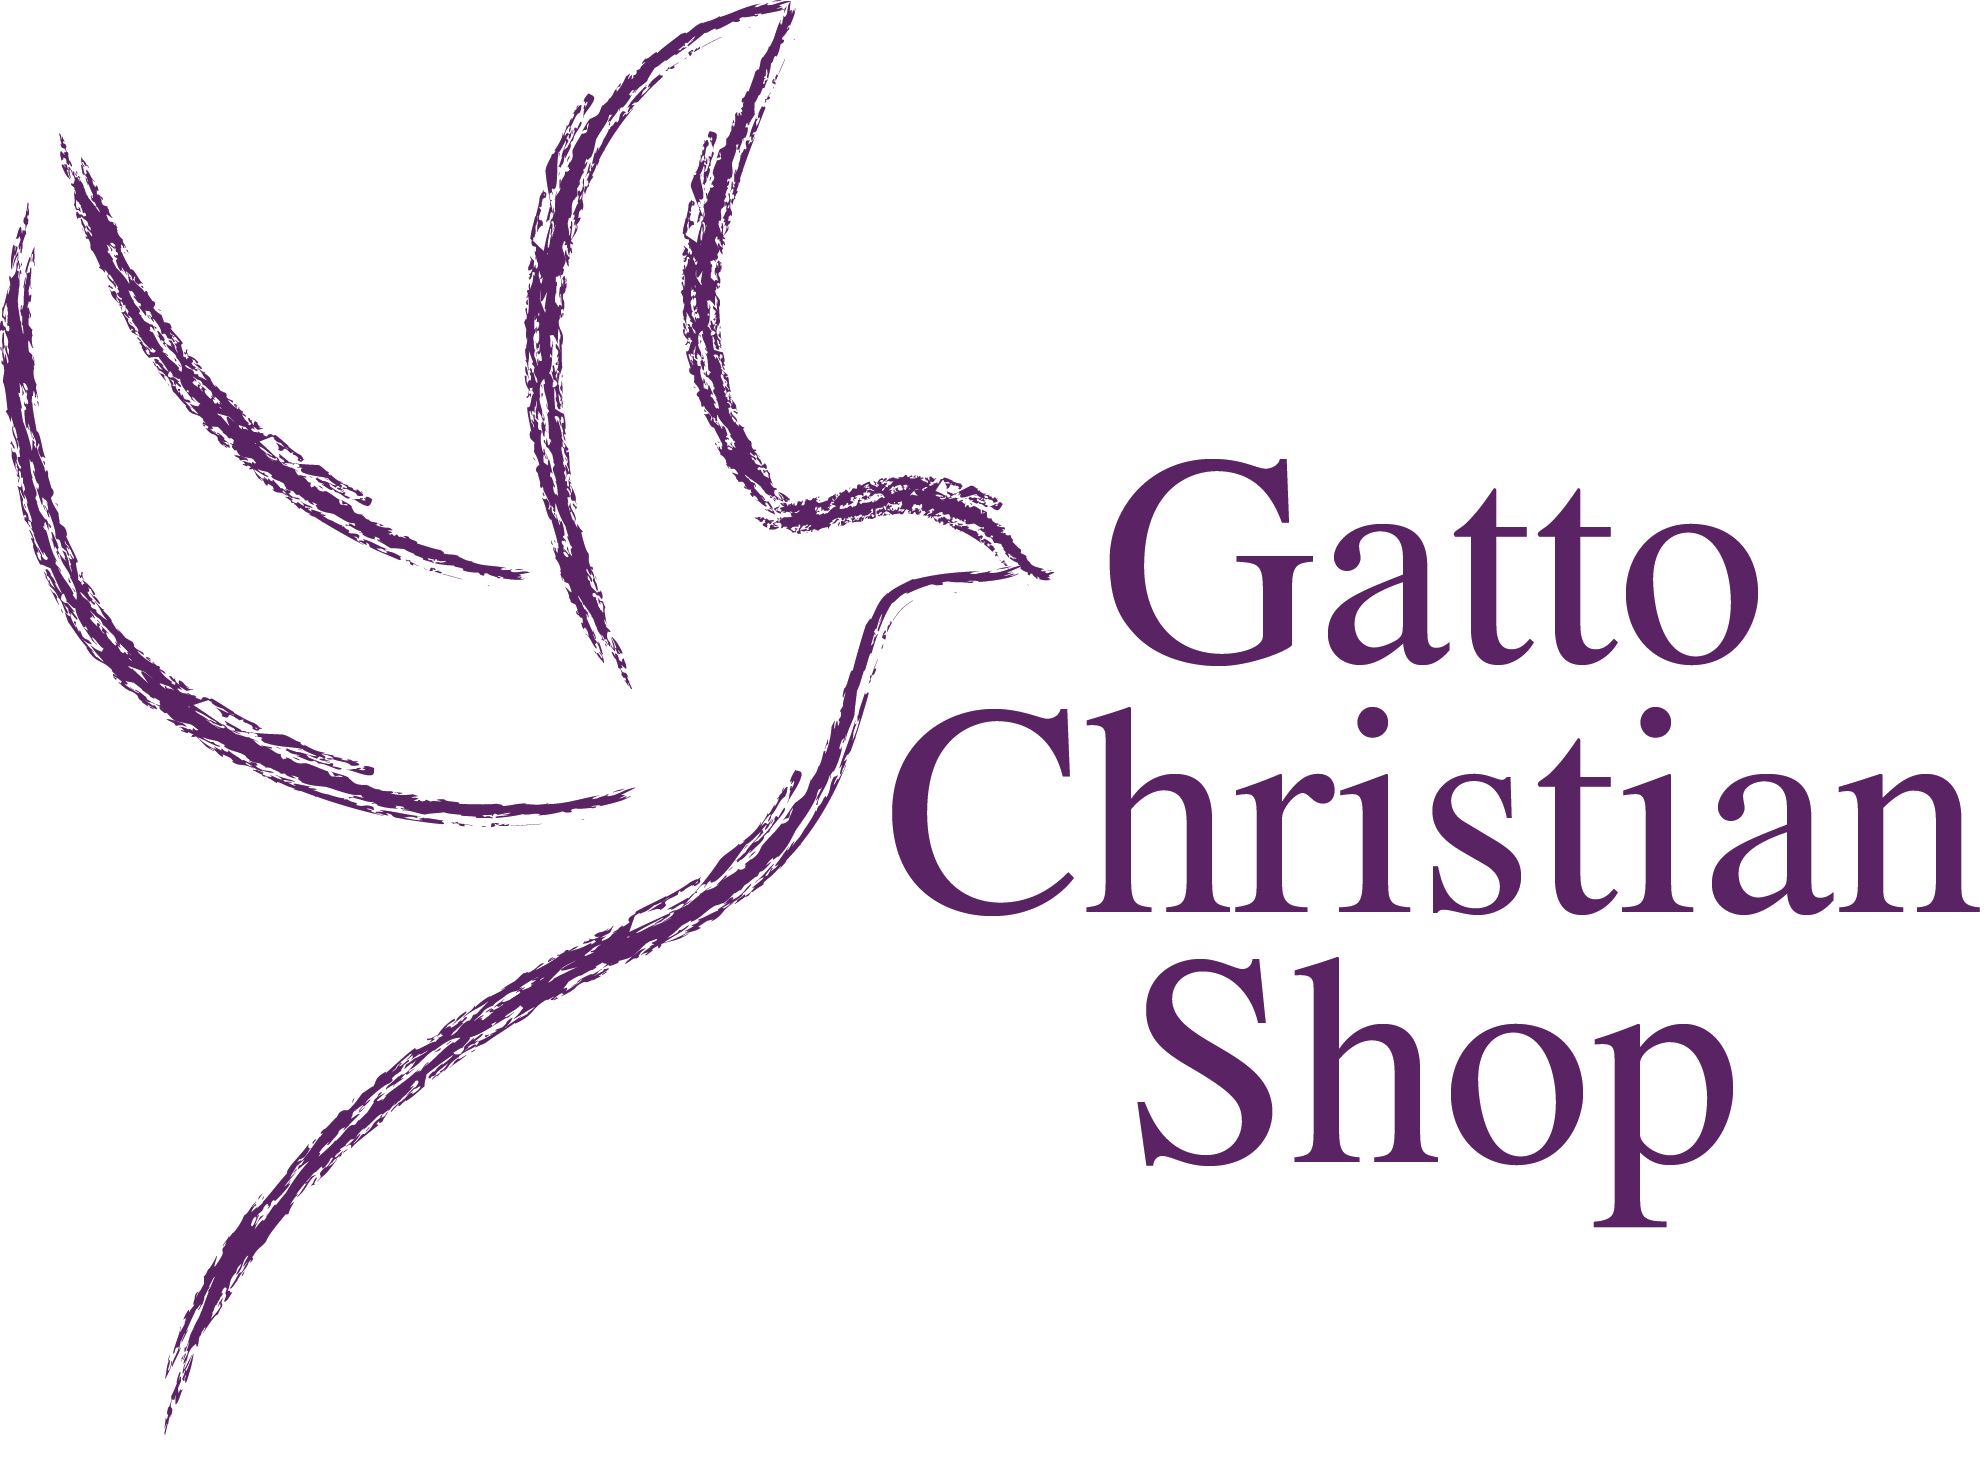 Gatto Christian Shop logo